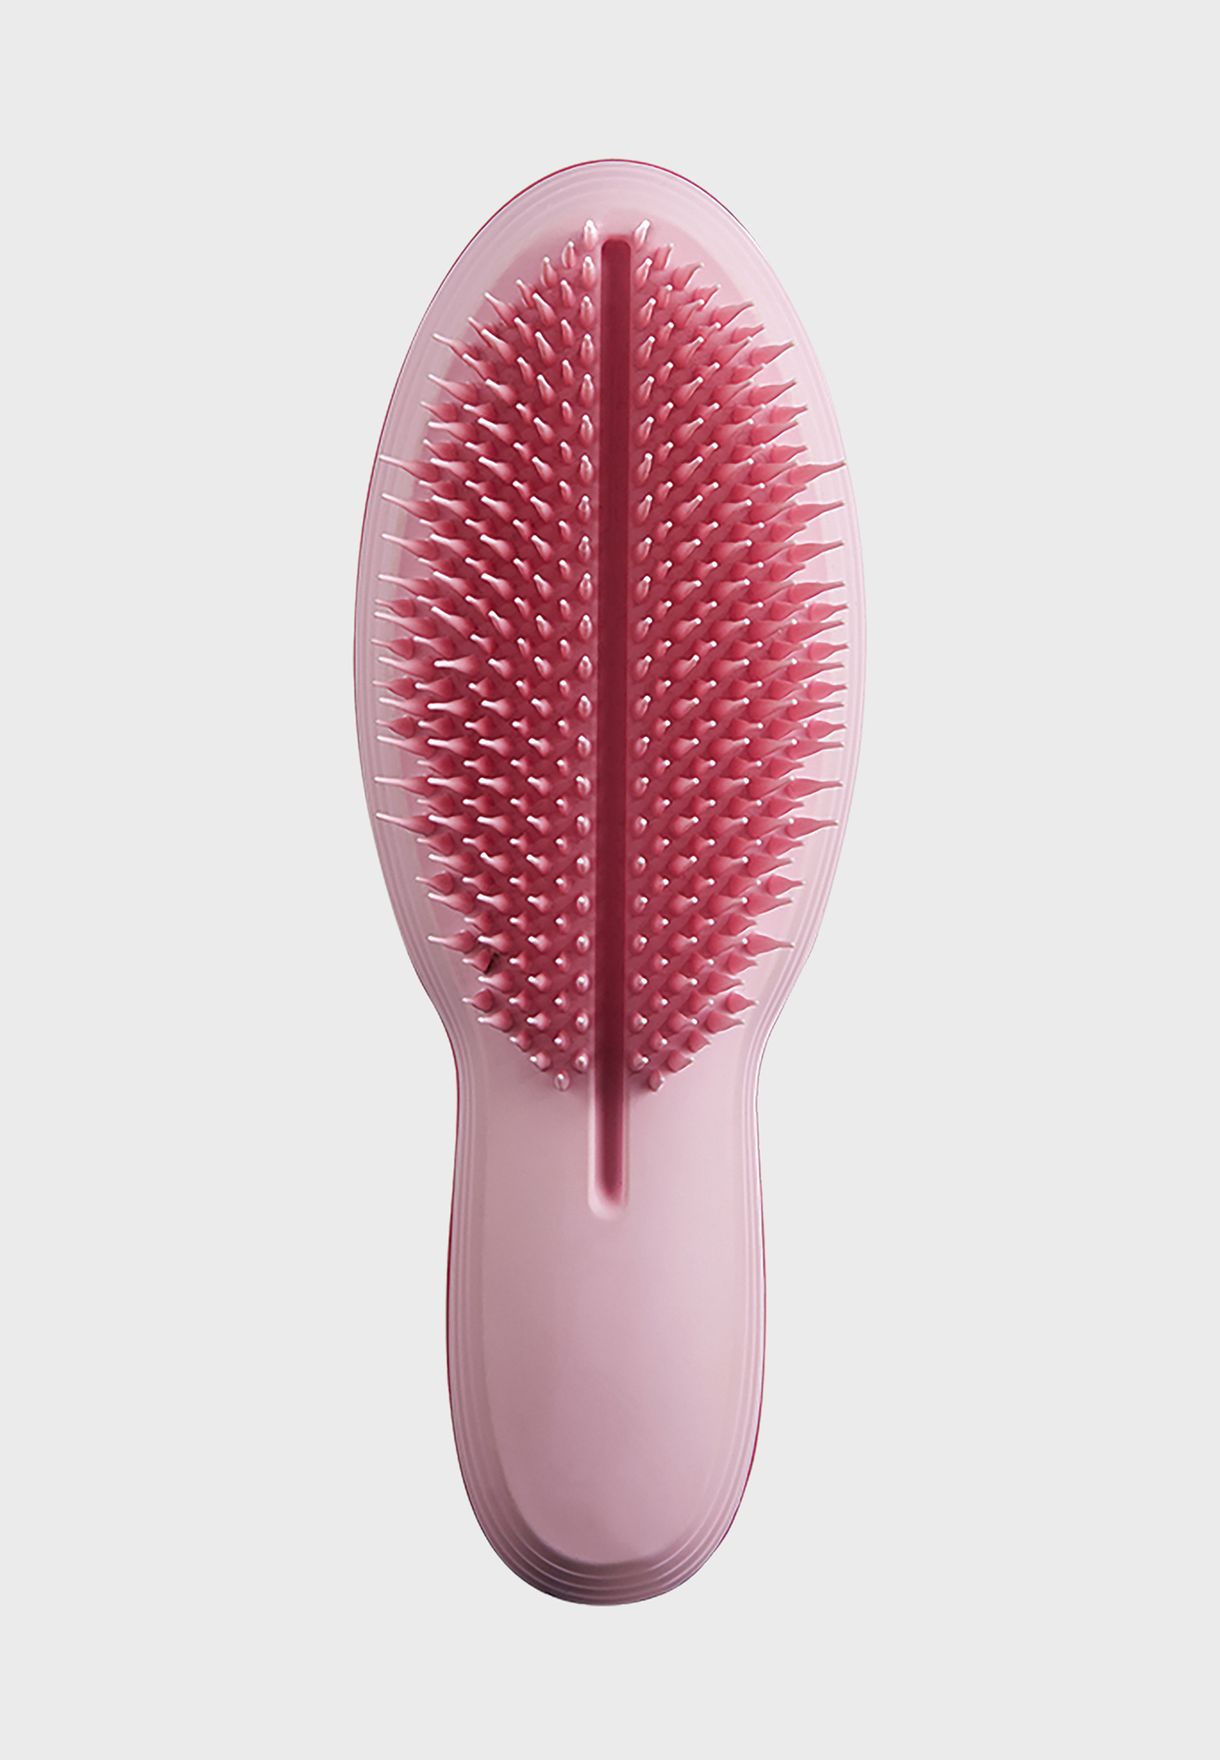 Ultimate Hair Brush - Pink